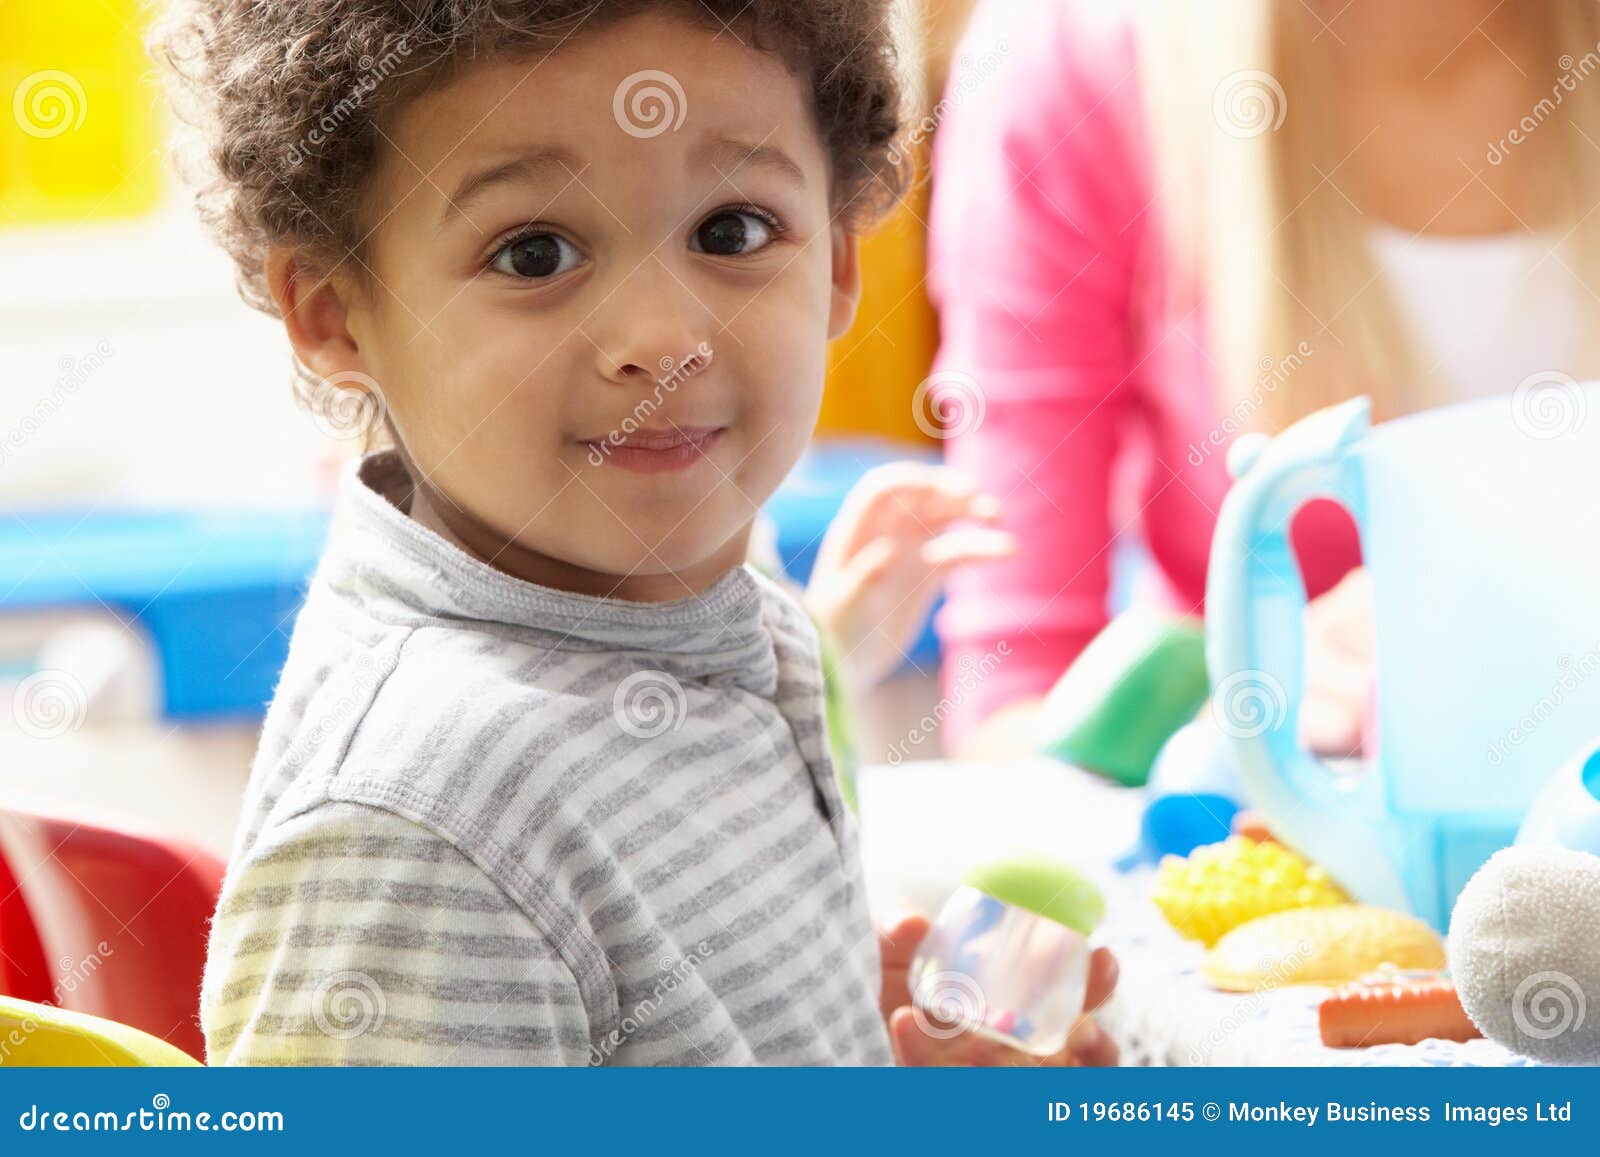 Ragazzo che gioca con i giocattoli in <b>scuola materna</b> - ragazzo-che-gioca-con-i-giocattoli-scuola-materna-19686145